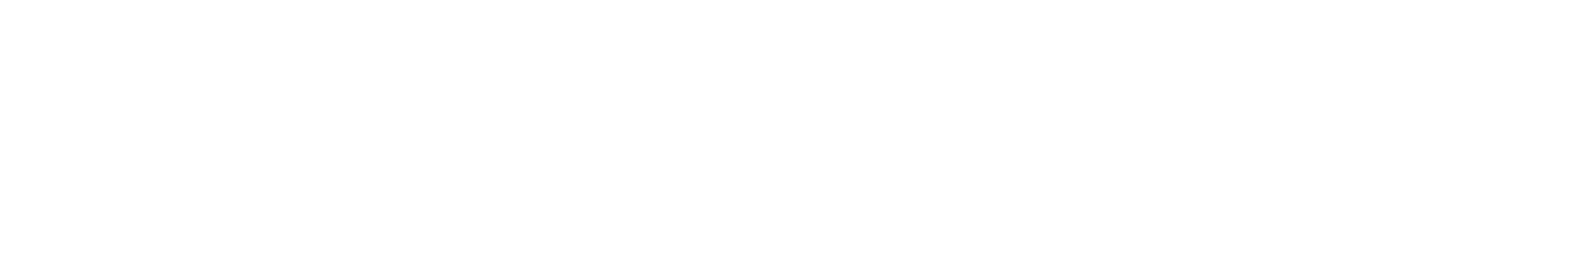 Aurora Cannabis logo grand pour les fonds sombres (PNG transparent)